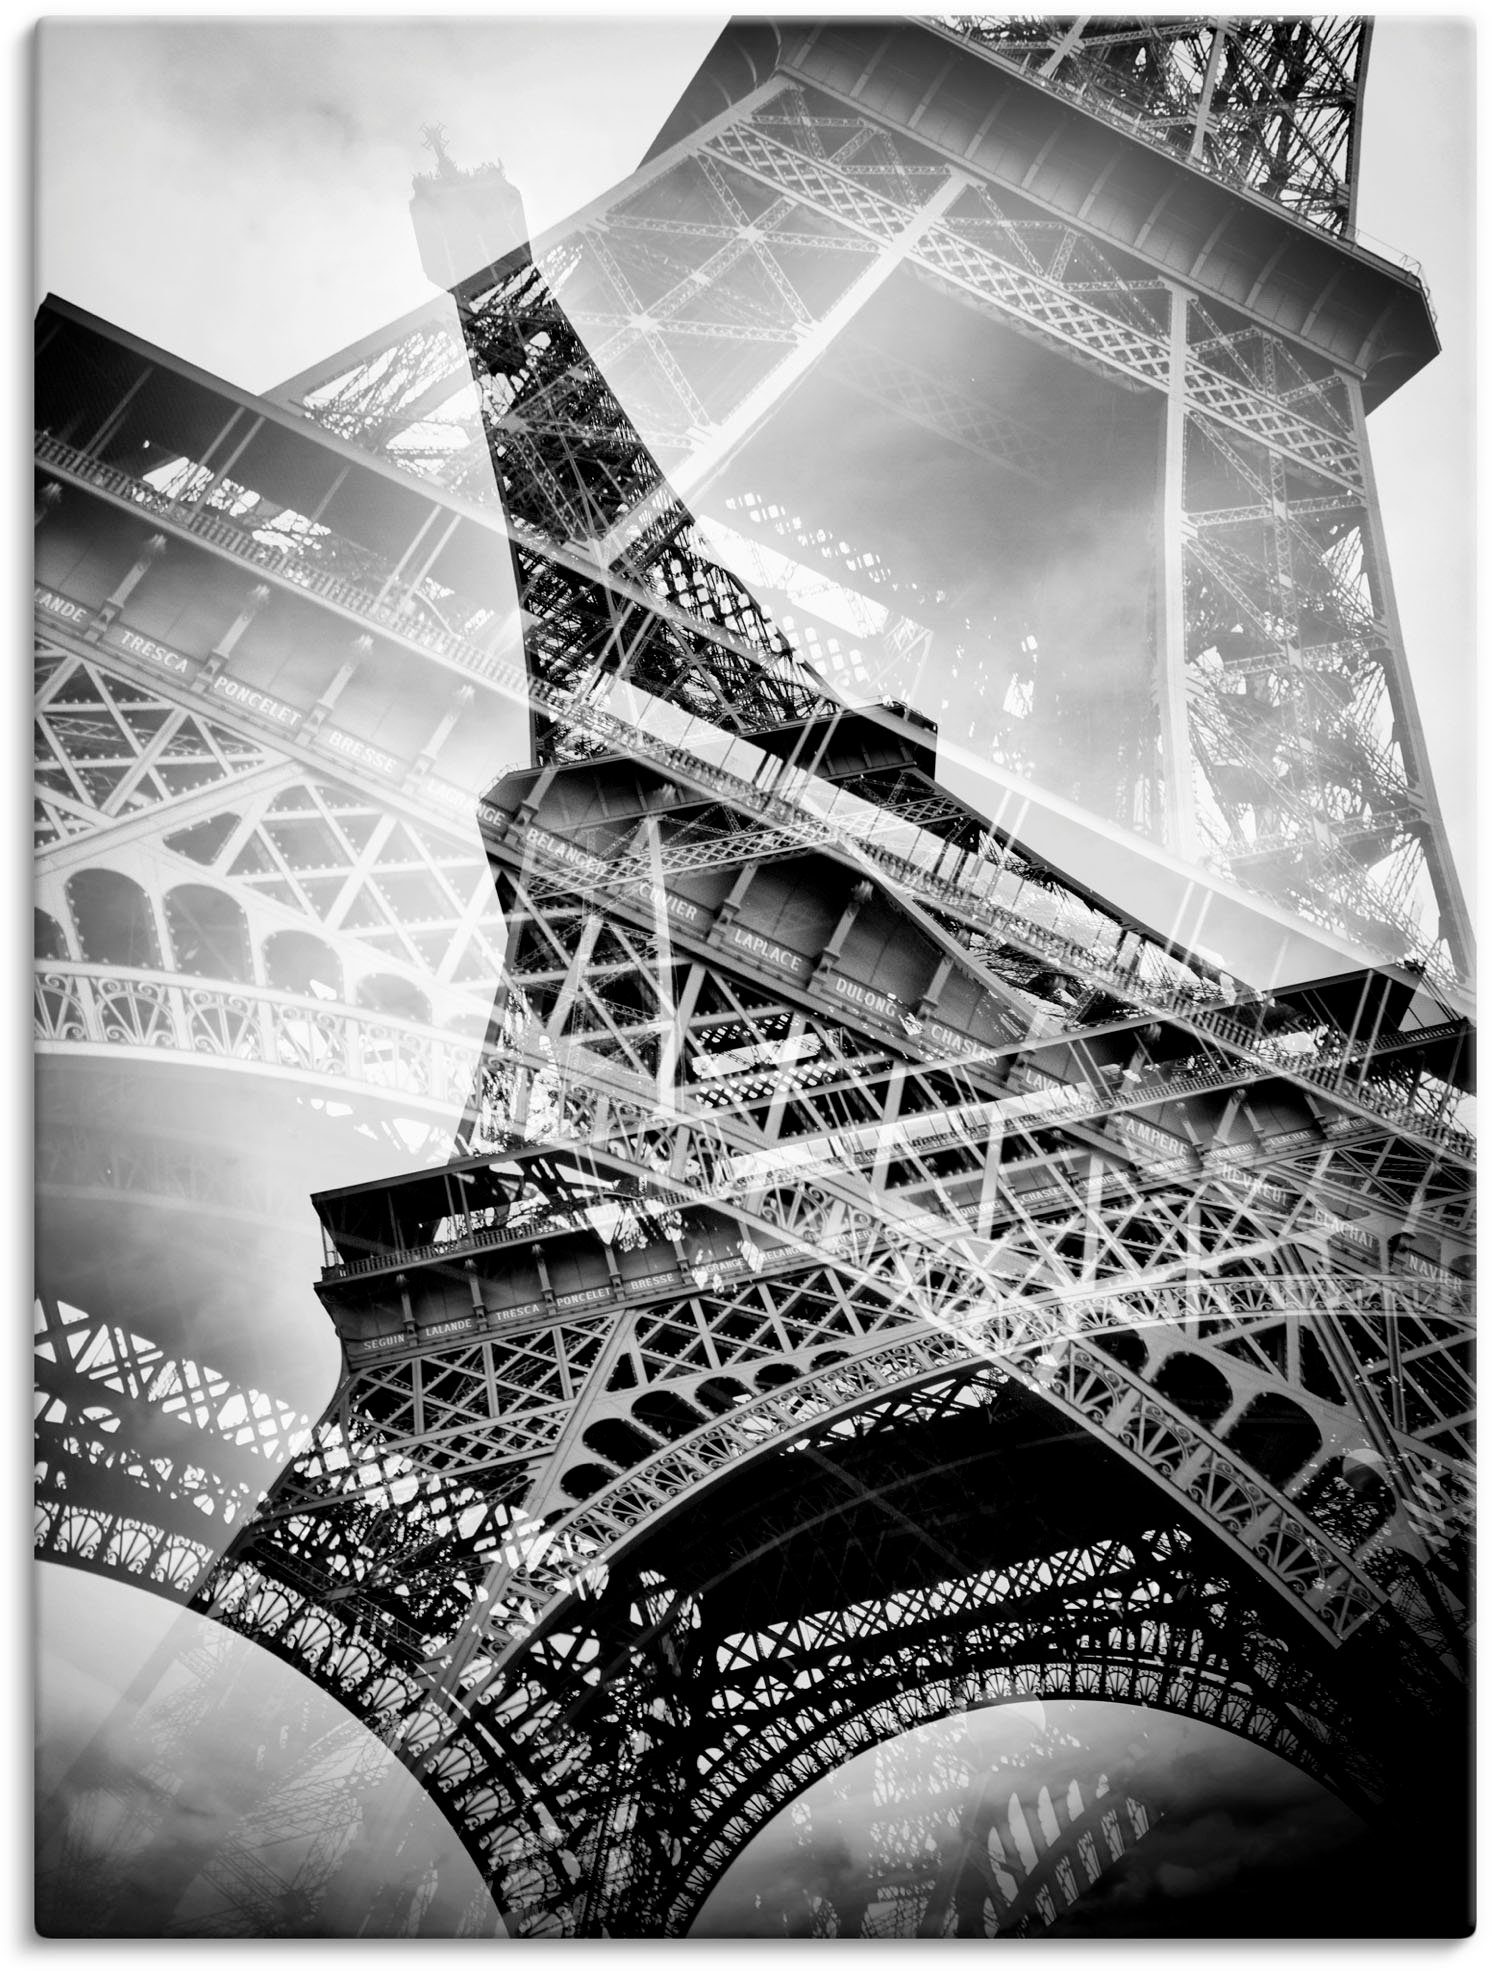 Artland Artprint De dubbele Eiffeltoren in vele afmetingen & productsoorten - artprint van aluminium / artprint voor buiten, artprint op linnen, poster, muursticker / wandfolie ook